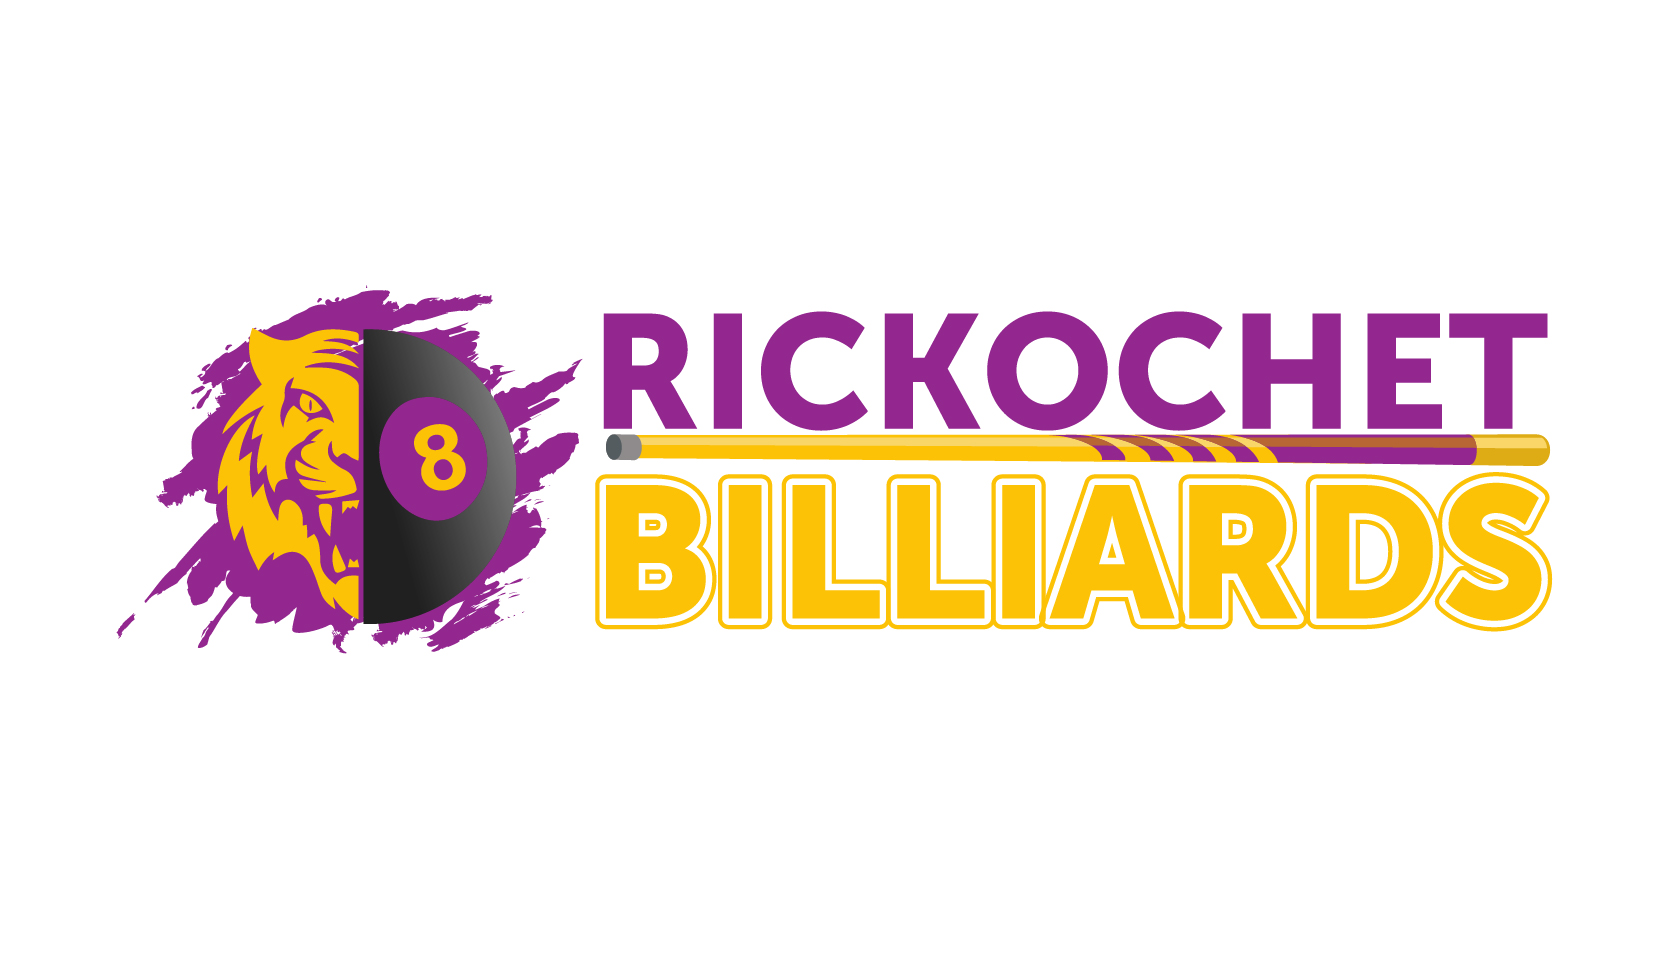 Rickochet Billiards